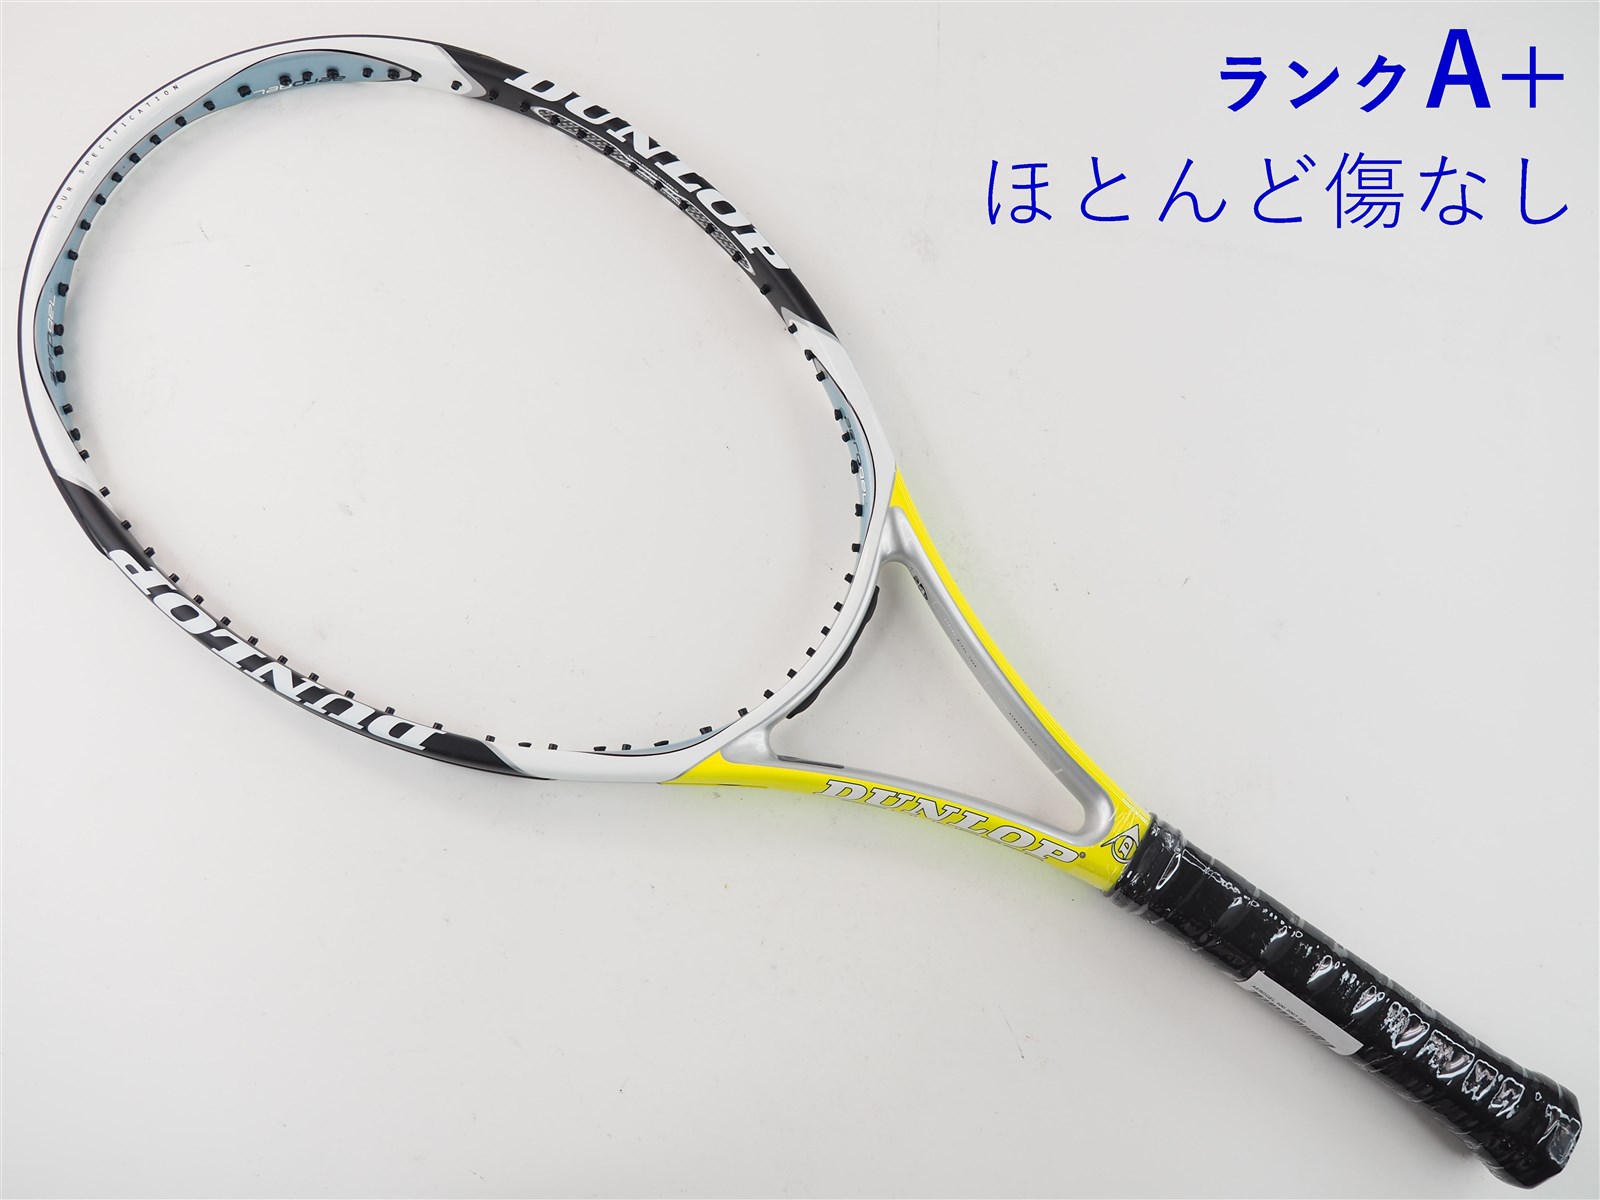 【中古】ダンロップ エアロジェル 500 2007年モデルDUNLOP AEROGEL 500 2007(G2)【中古 テニスラケット】【送料